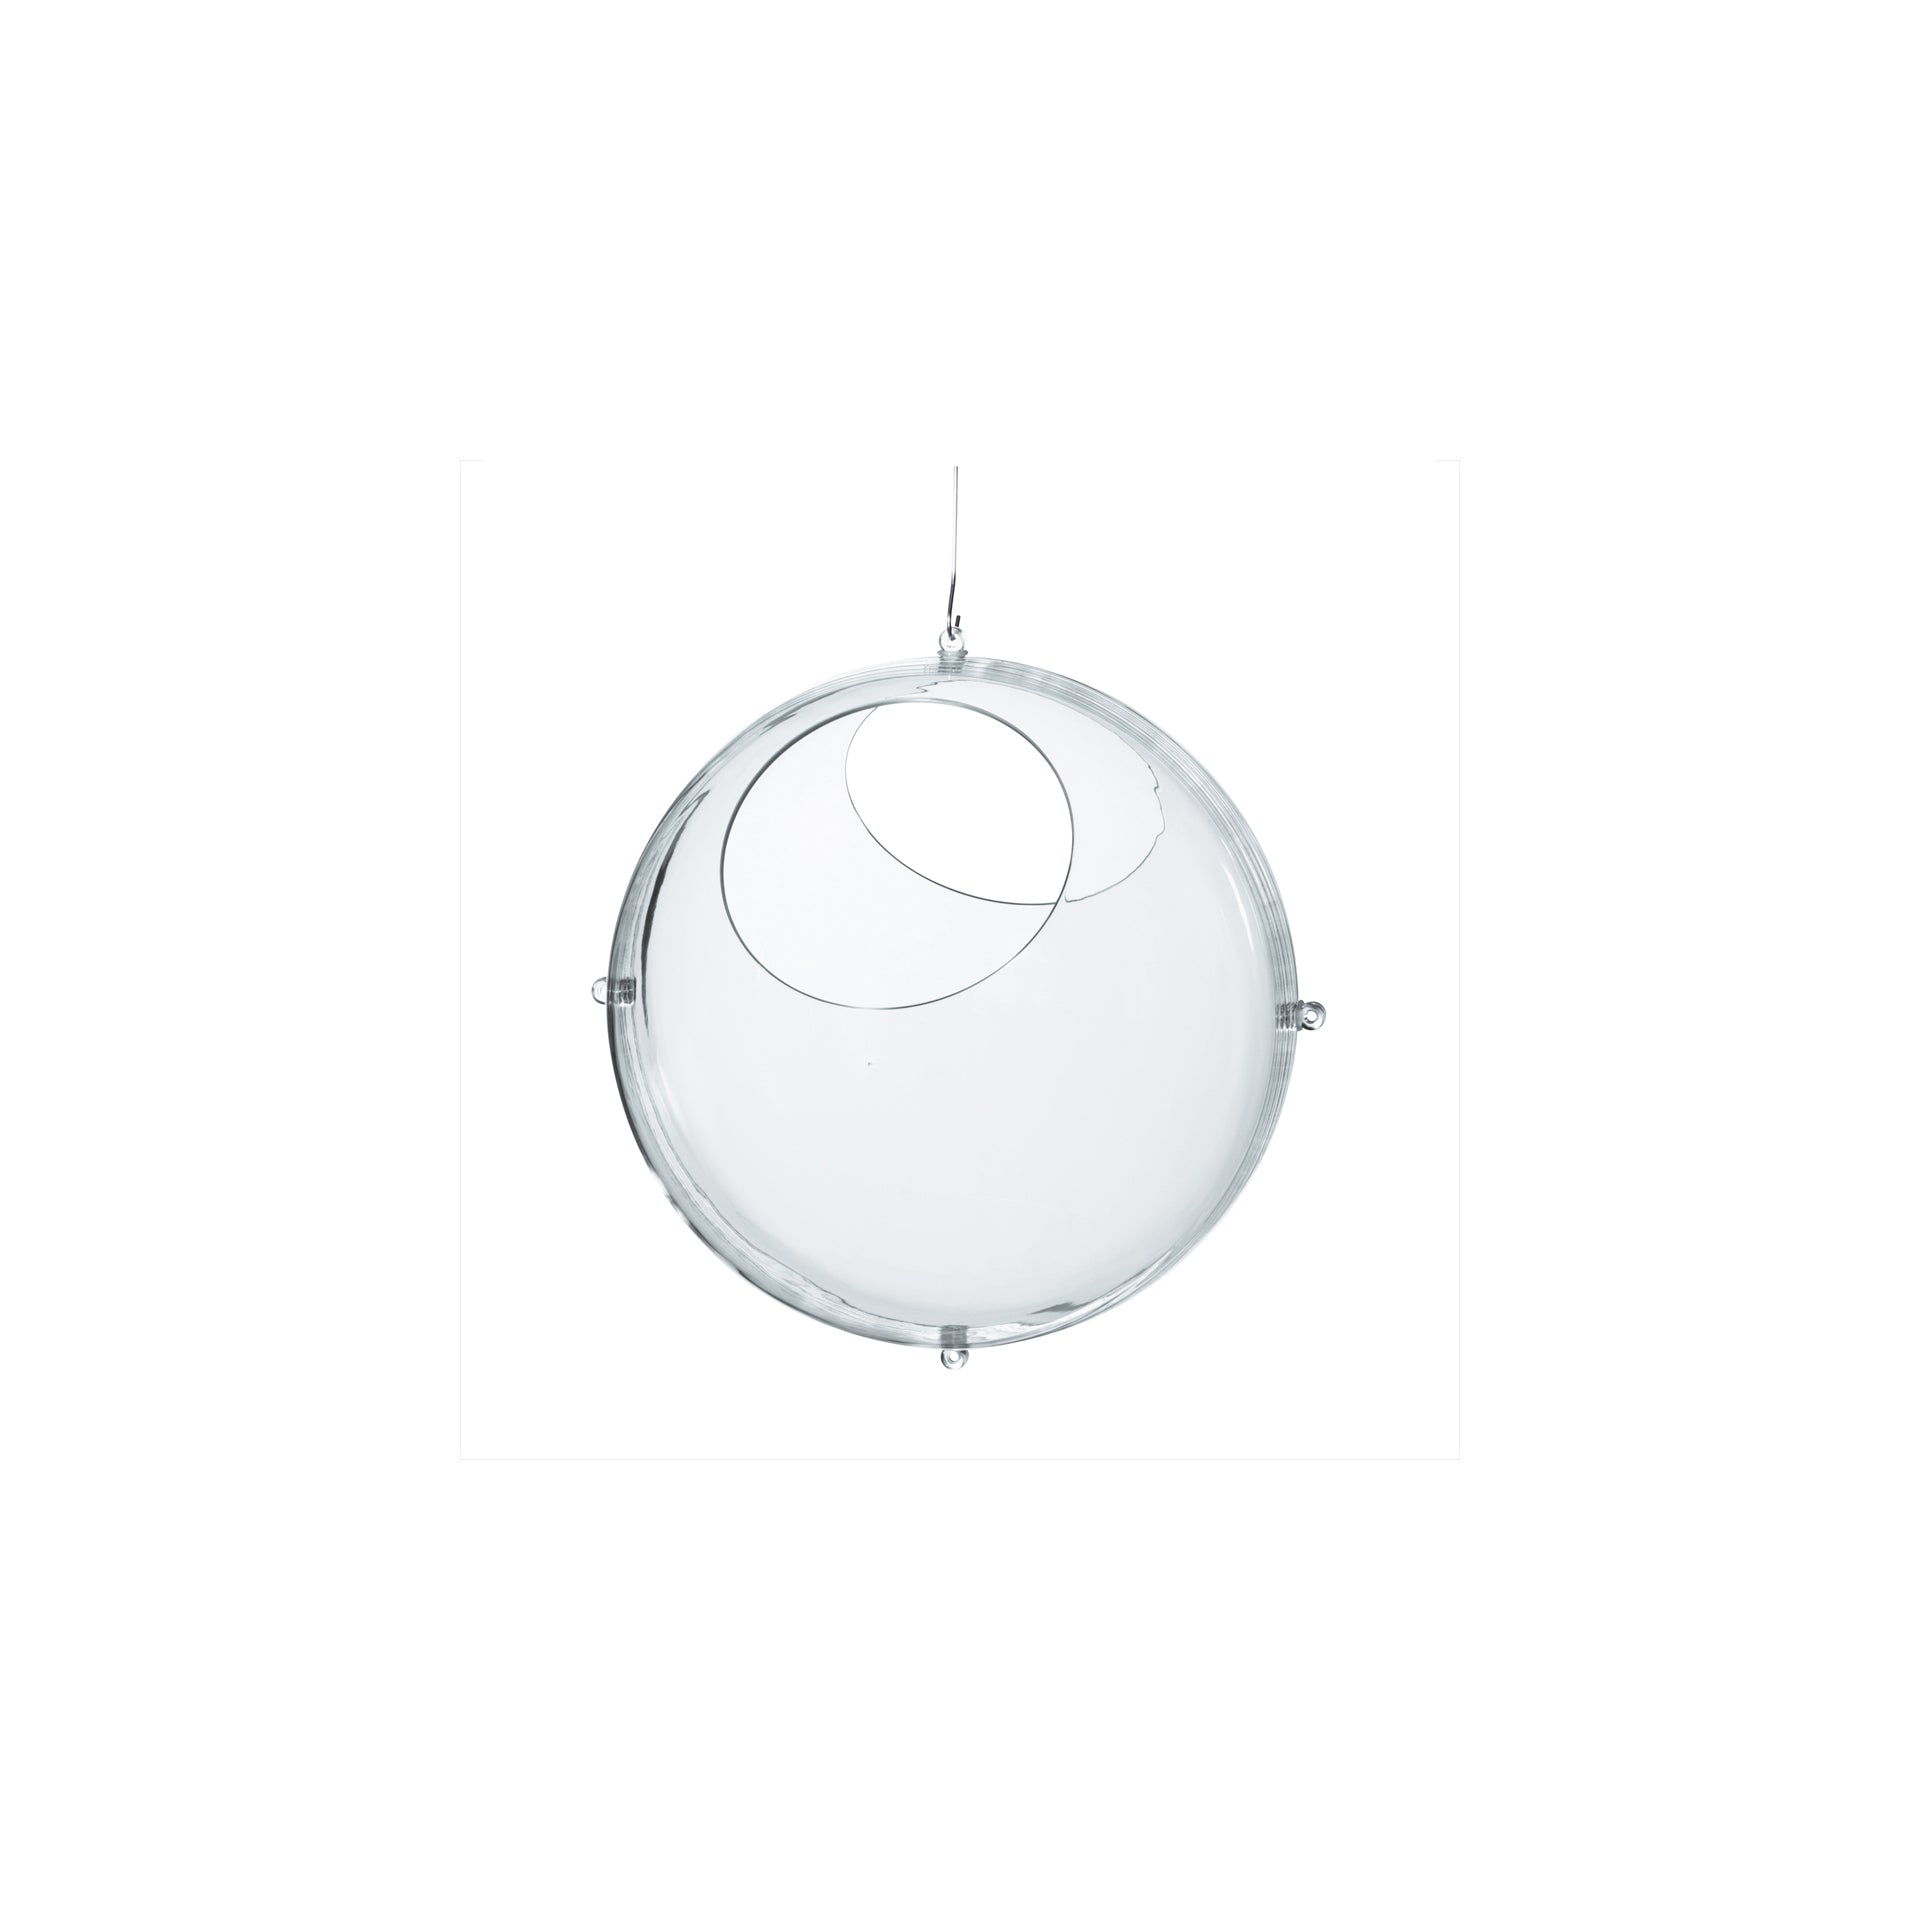 Koziol Bola Decorativa Suspensão Transparente Orion